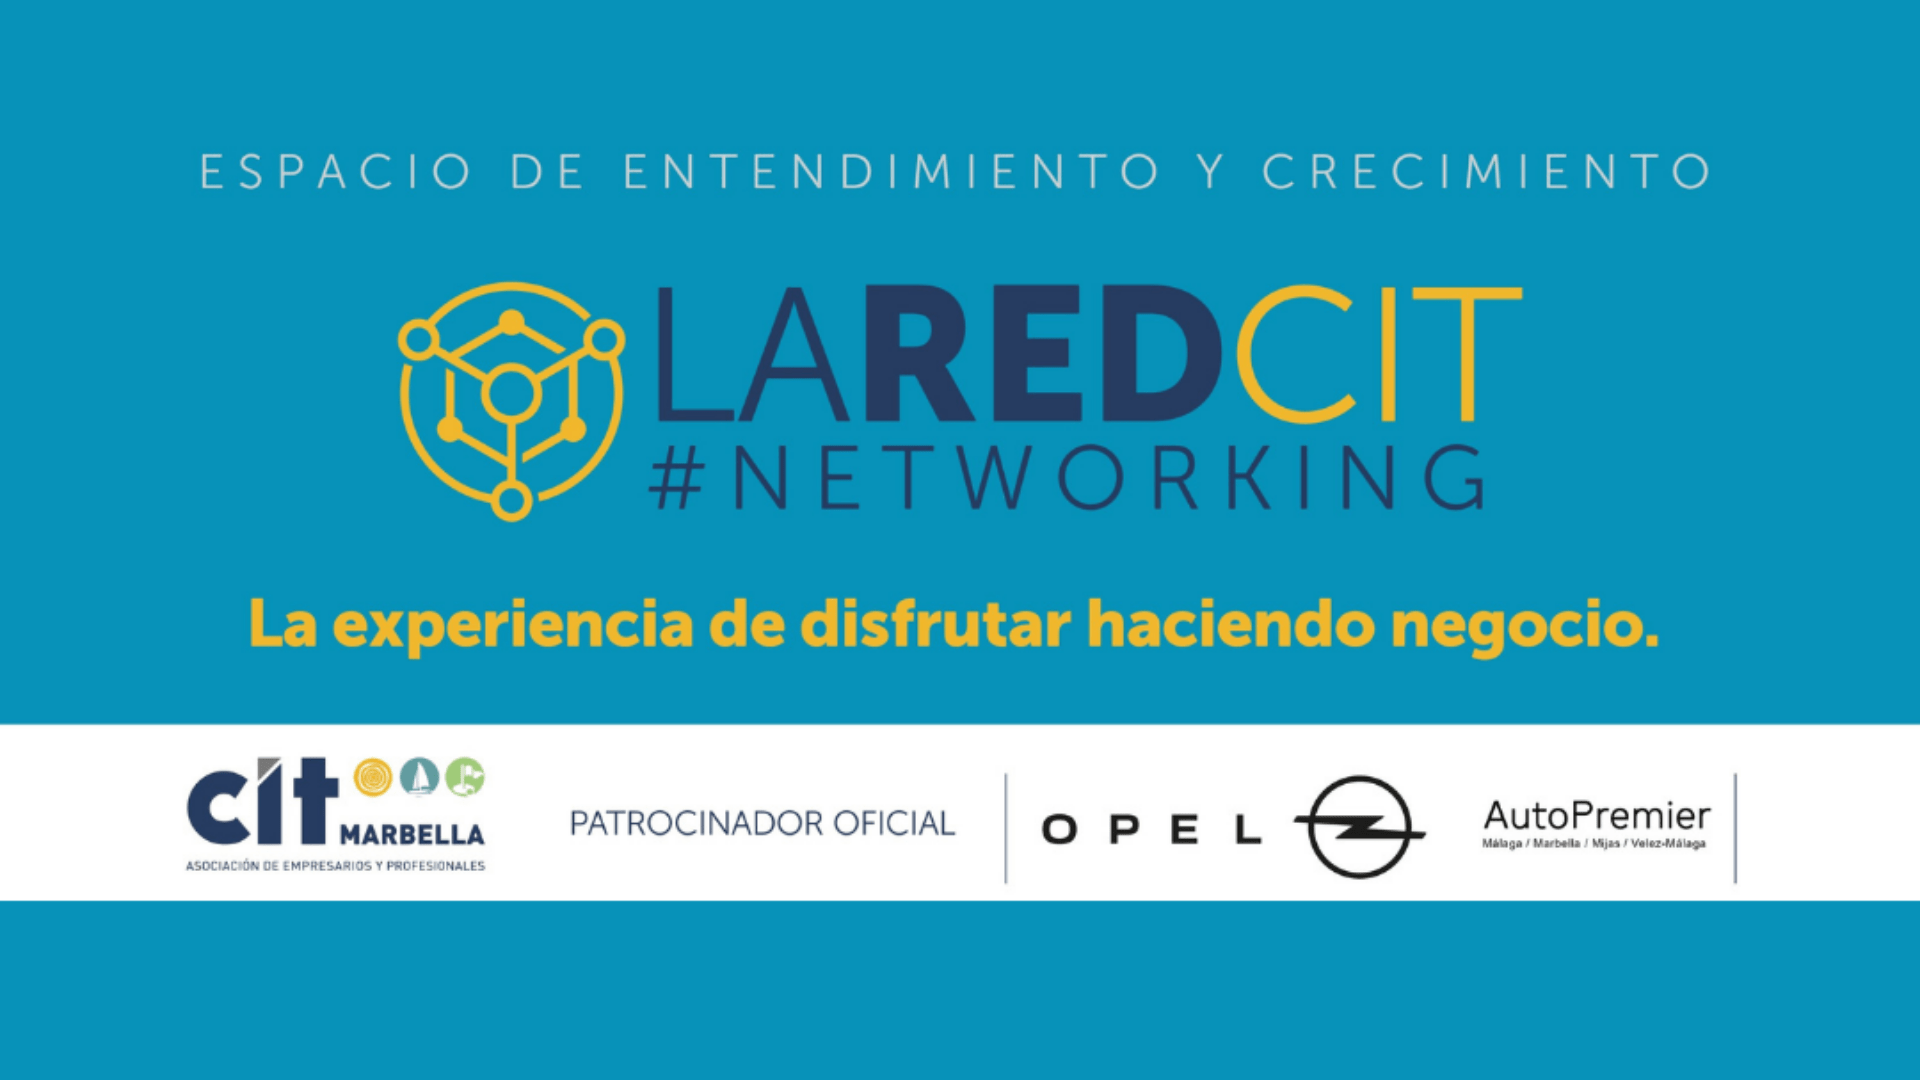 Únete a la LaRed CIT, una nueva forma de hacer networking